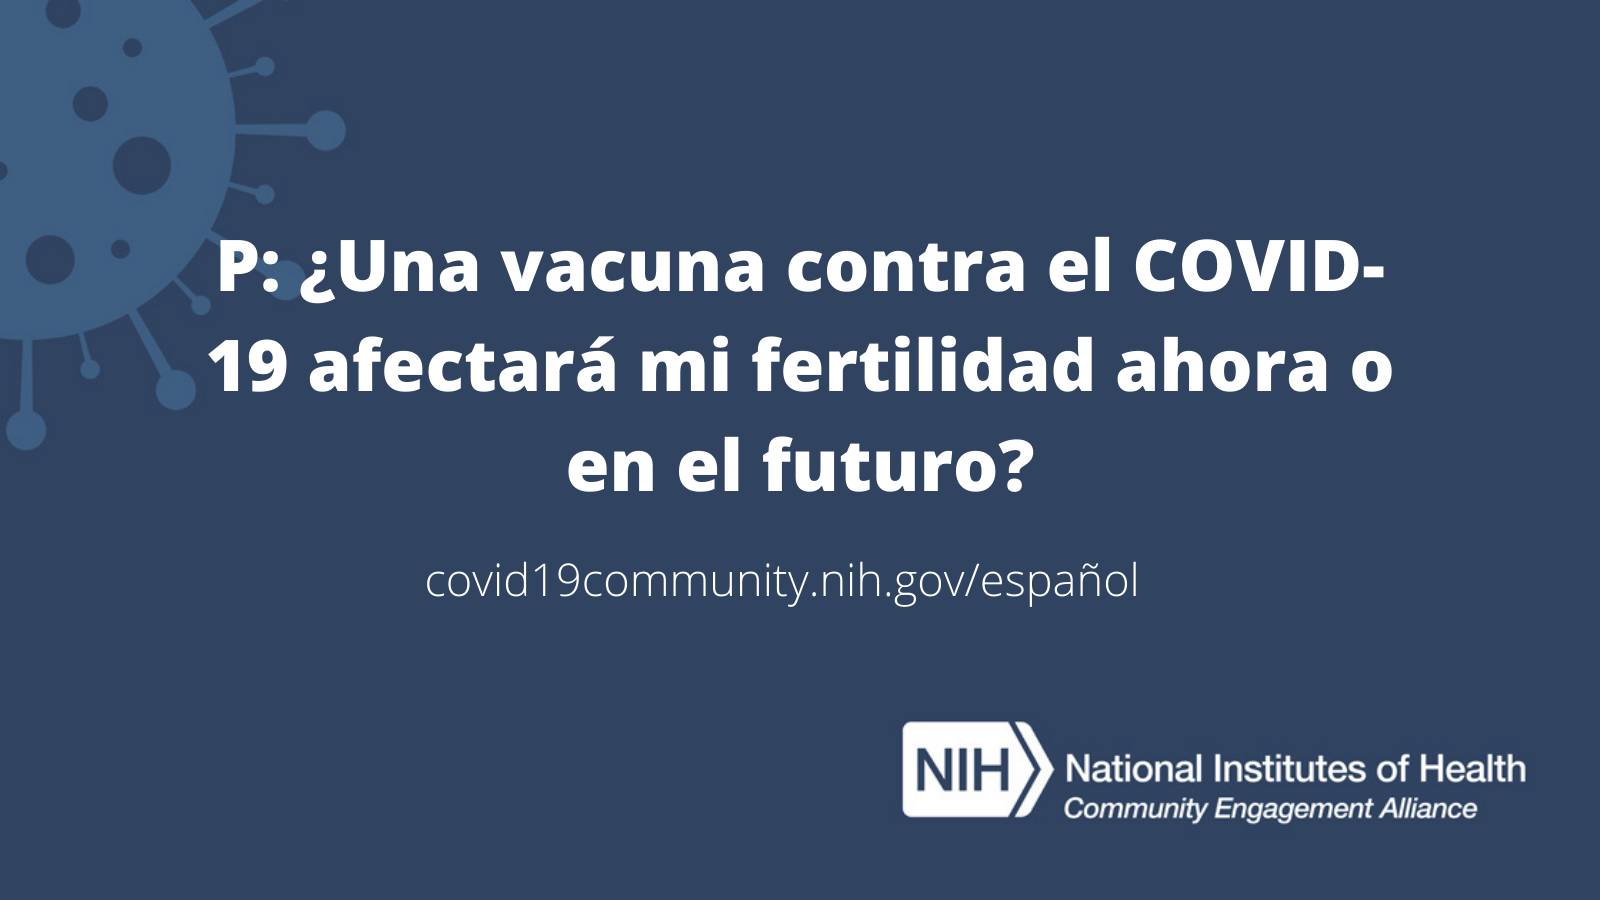 P: ¿Una vacuna contra el COVID-19 afectará mi fertilidad ahora o en el futuro?